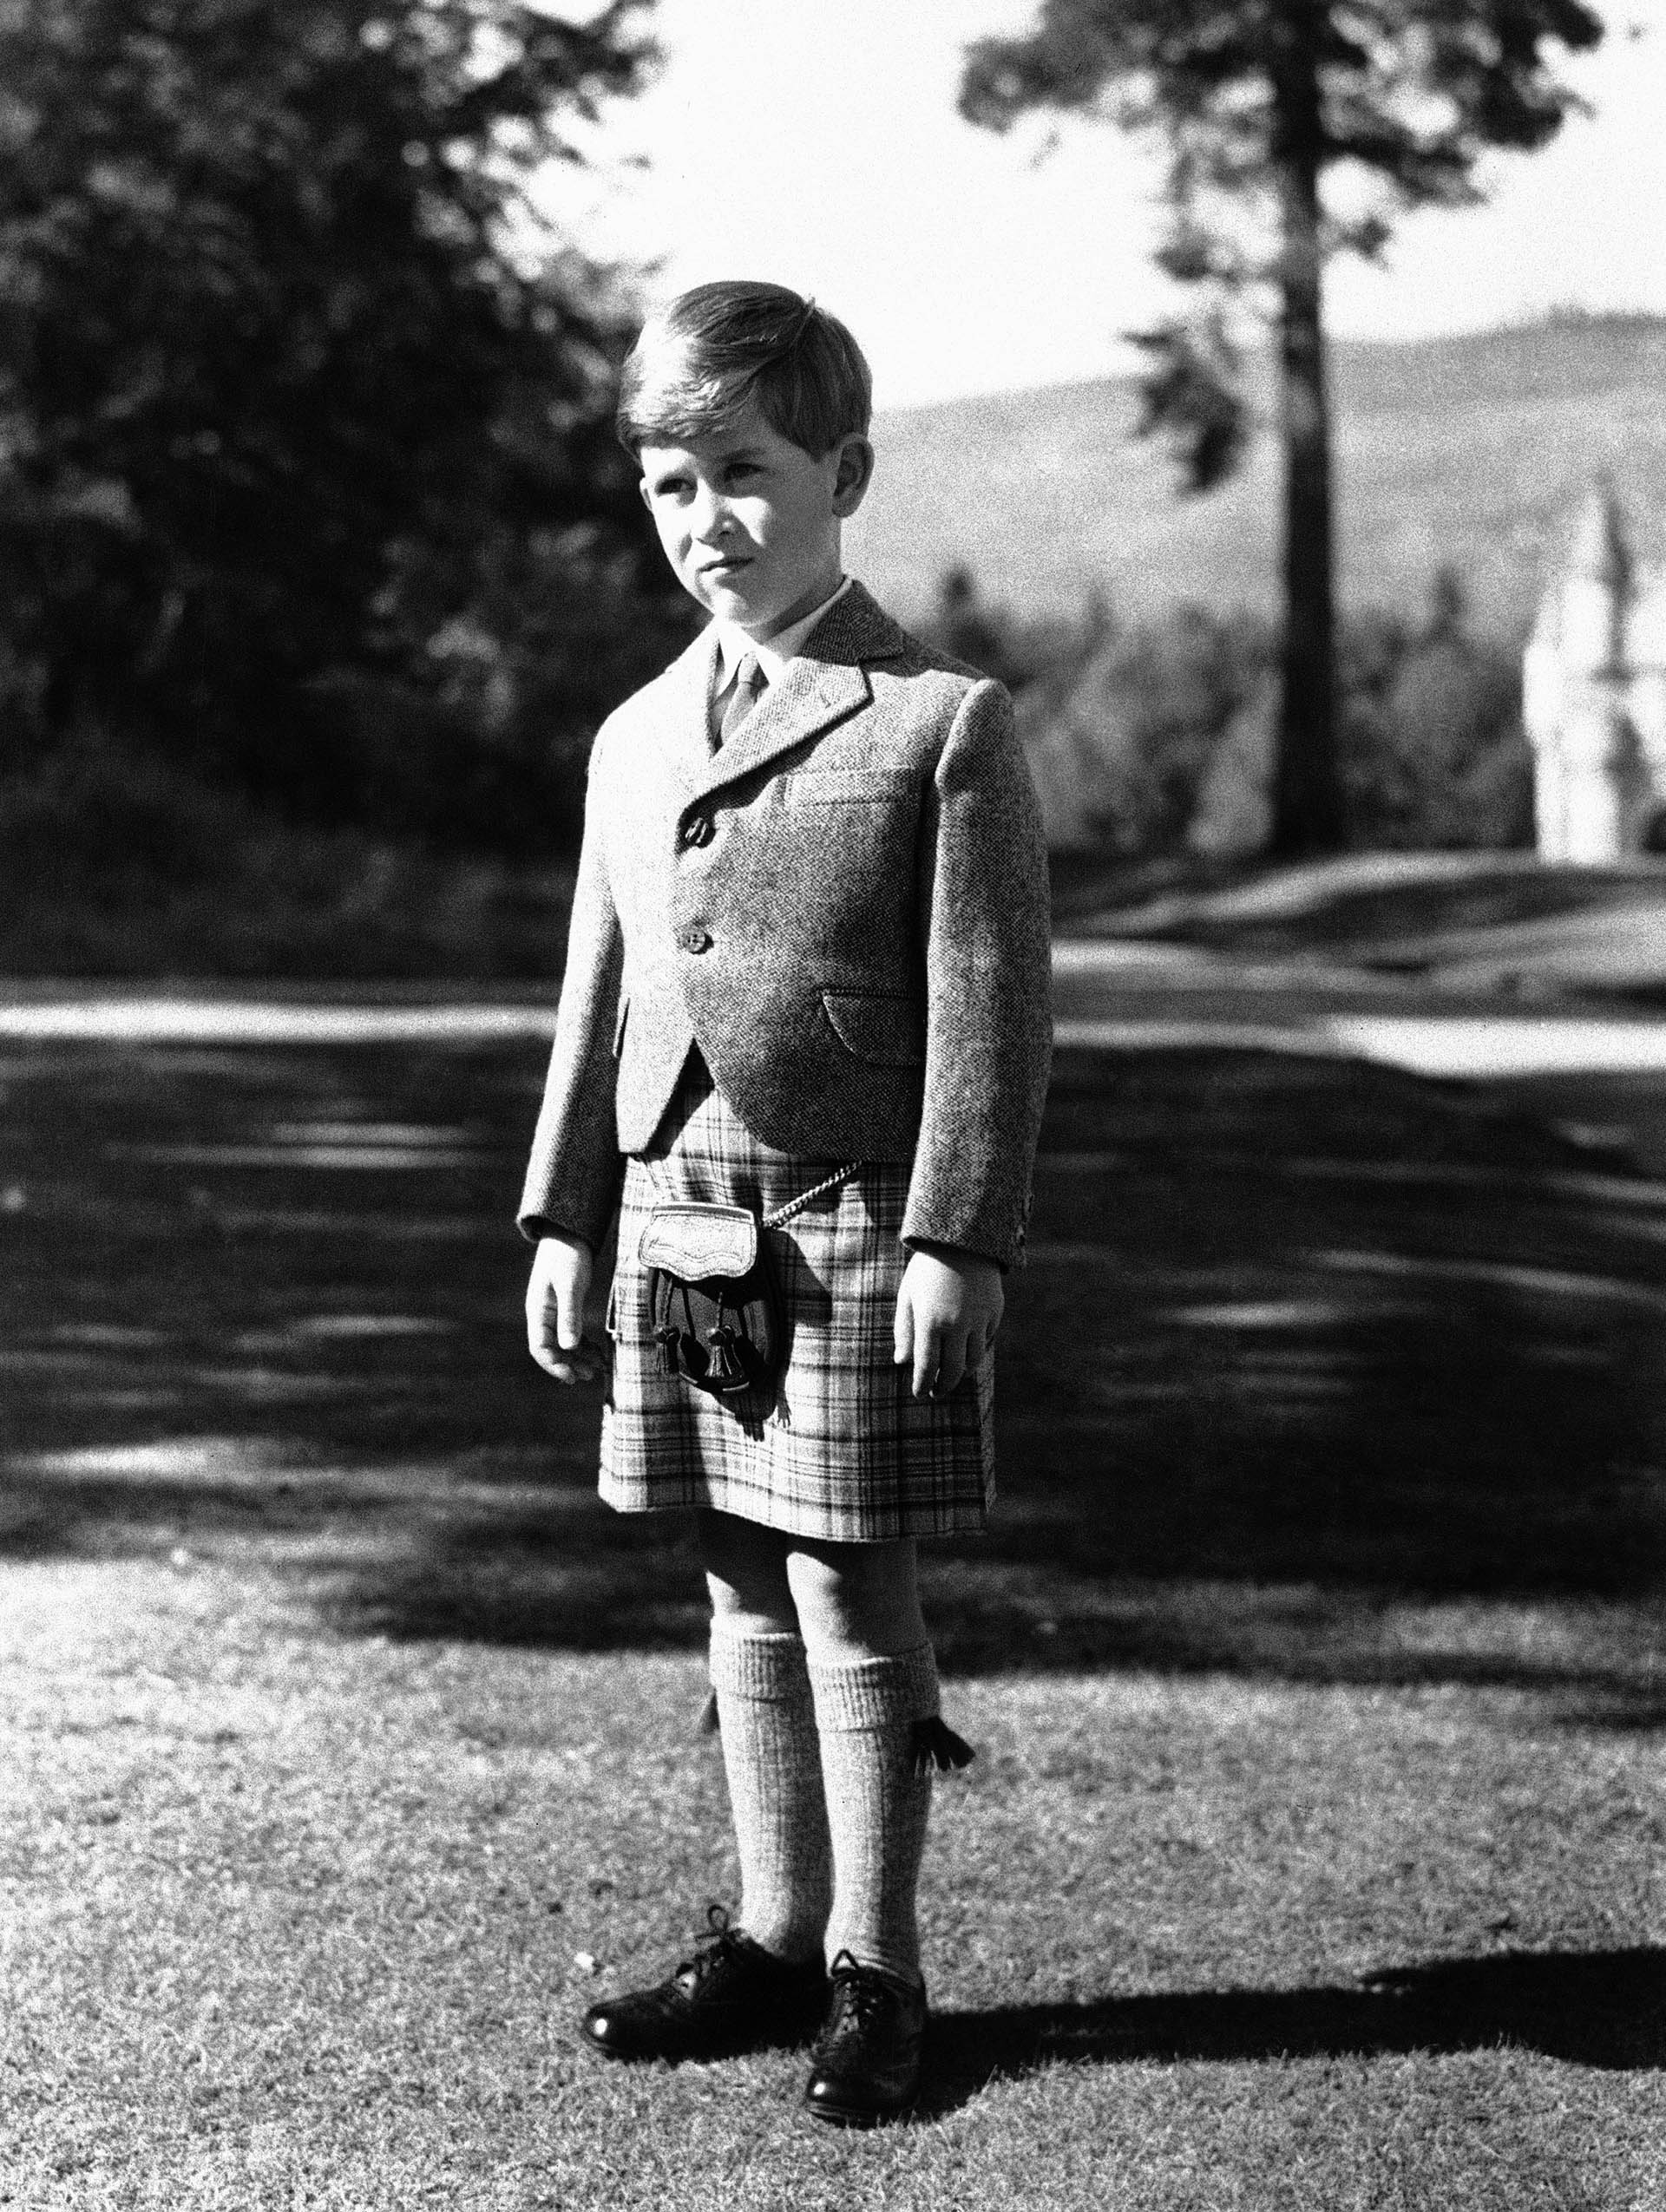 ARCHIVO - El príncipe Carlos de Gran Bretaña posa para una foto con una falda escocesa de Balmoral Tartan en los terrenos del Castillo de Balmoral, en Balmoral, Escocia, el 12 de noviembre de 1955.  (Foto AP, Archivo)
